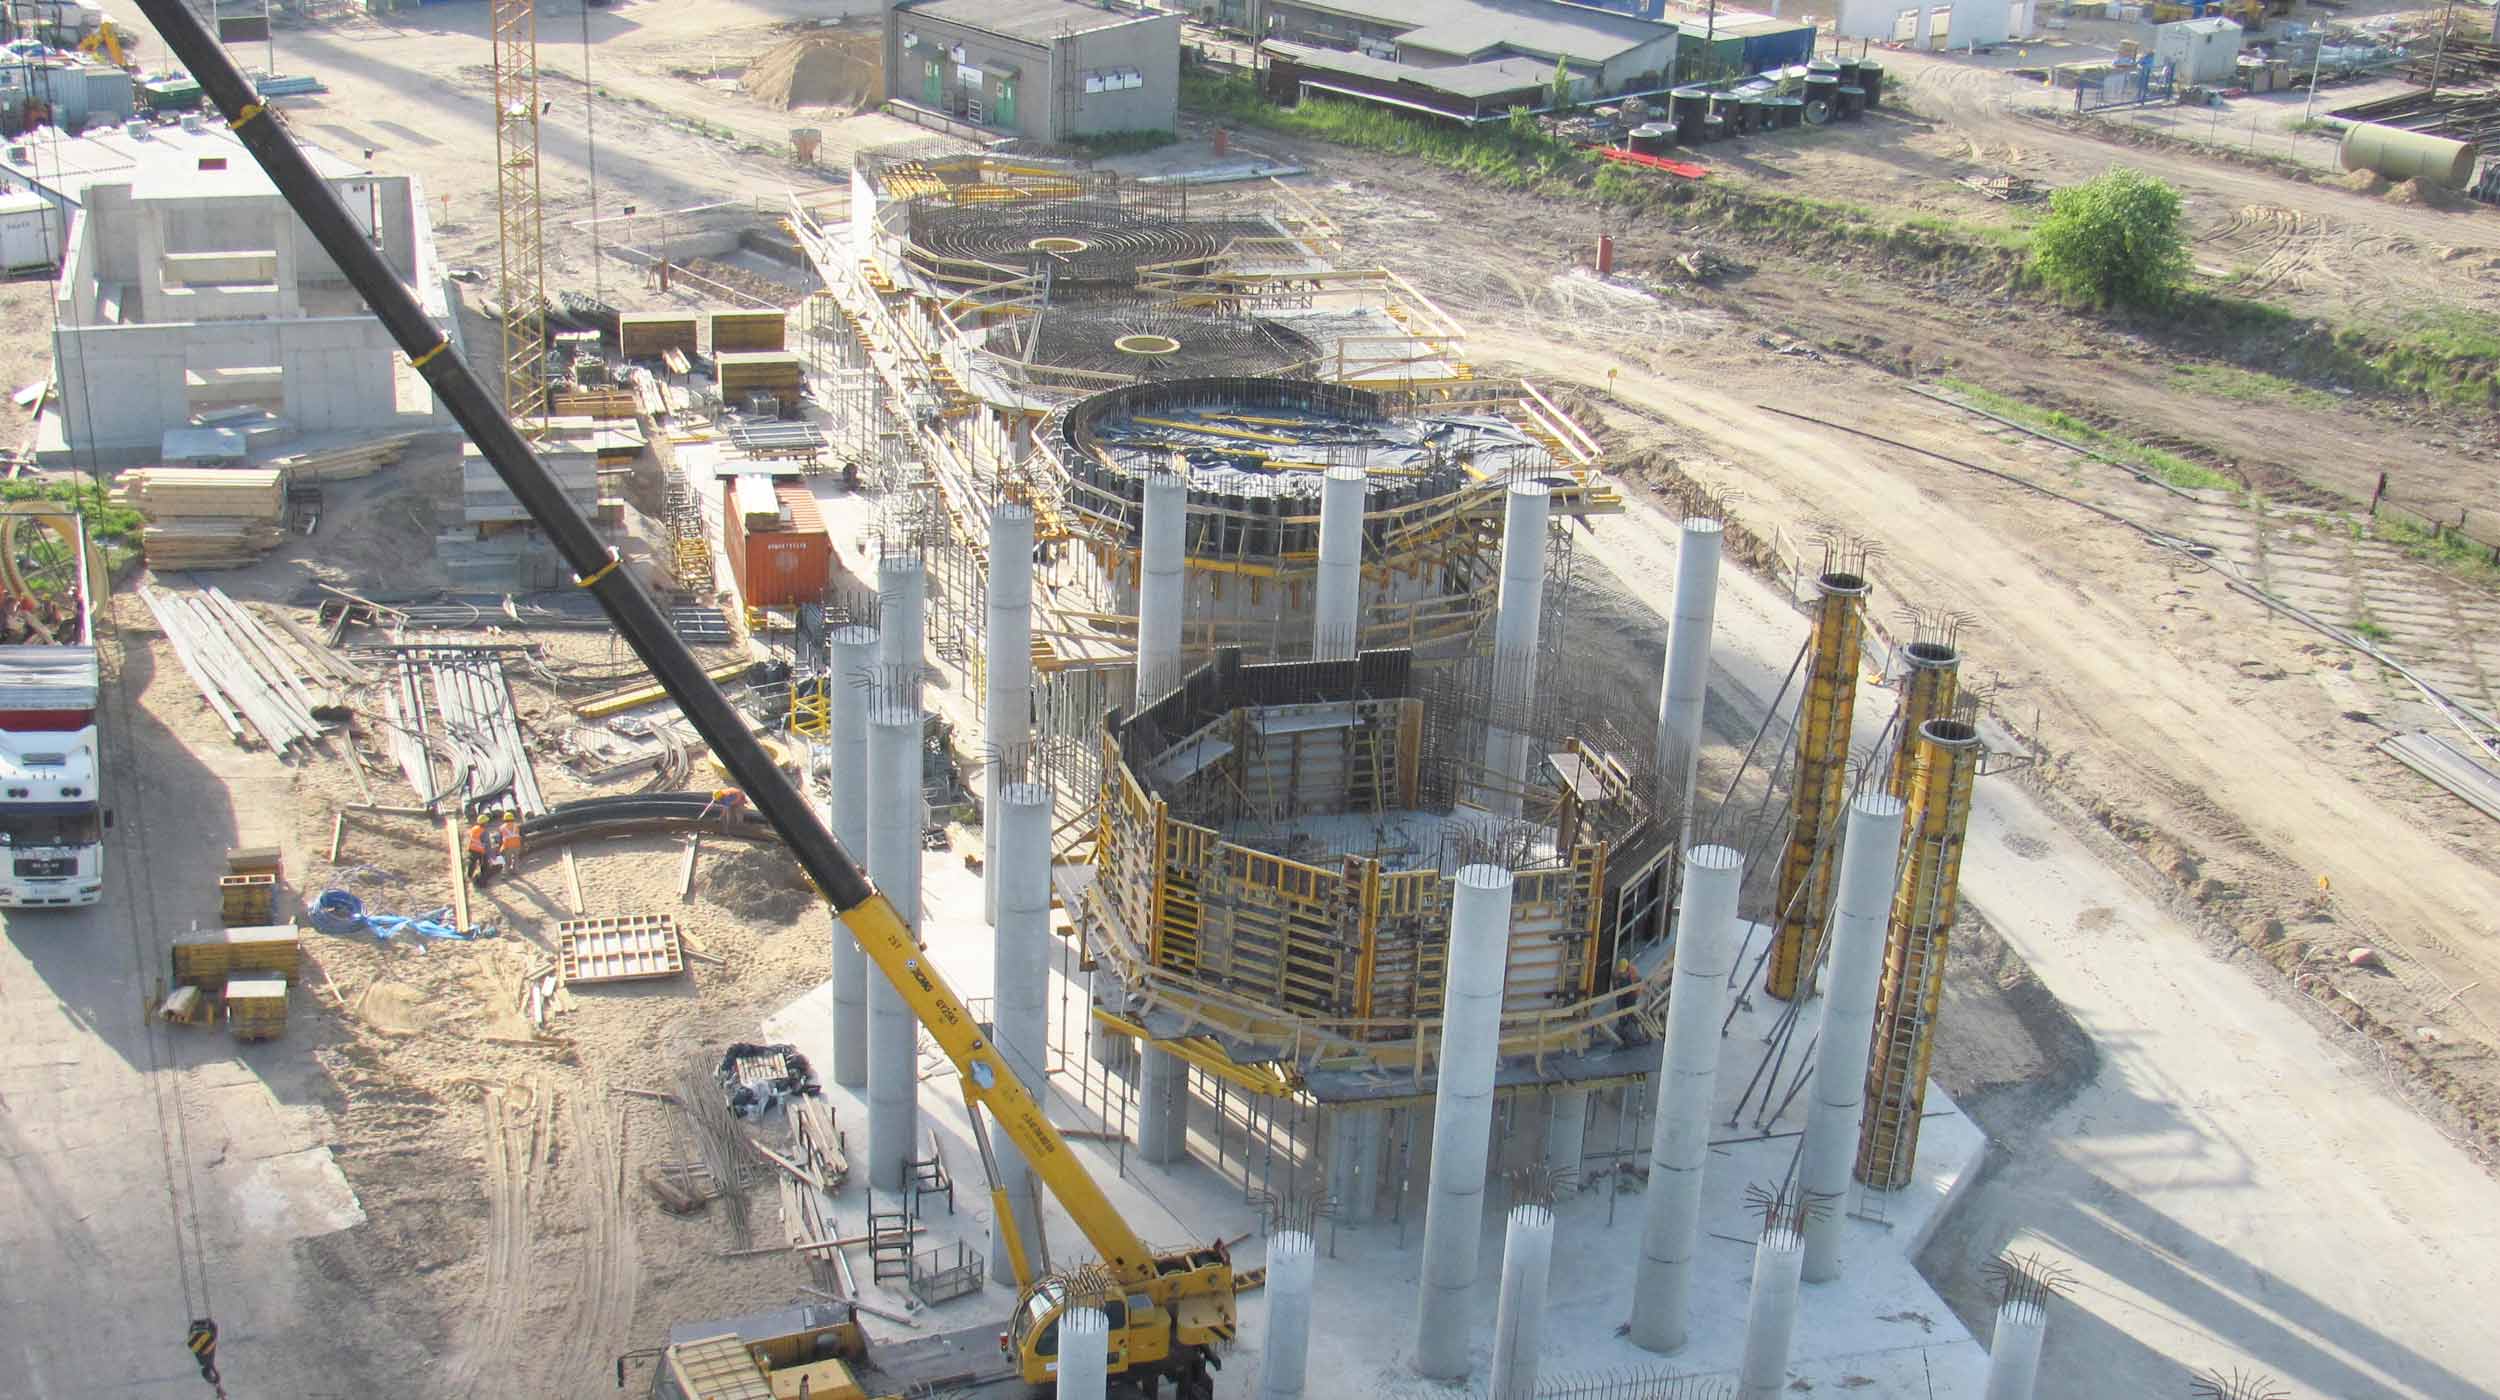 Le projet consiste en la construction d’une centrale électrique à biomasse de 50 MW de puissance.